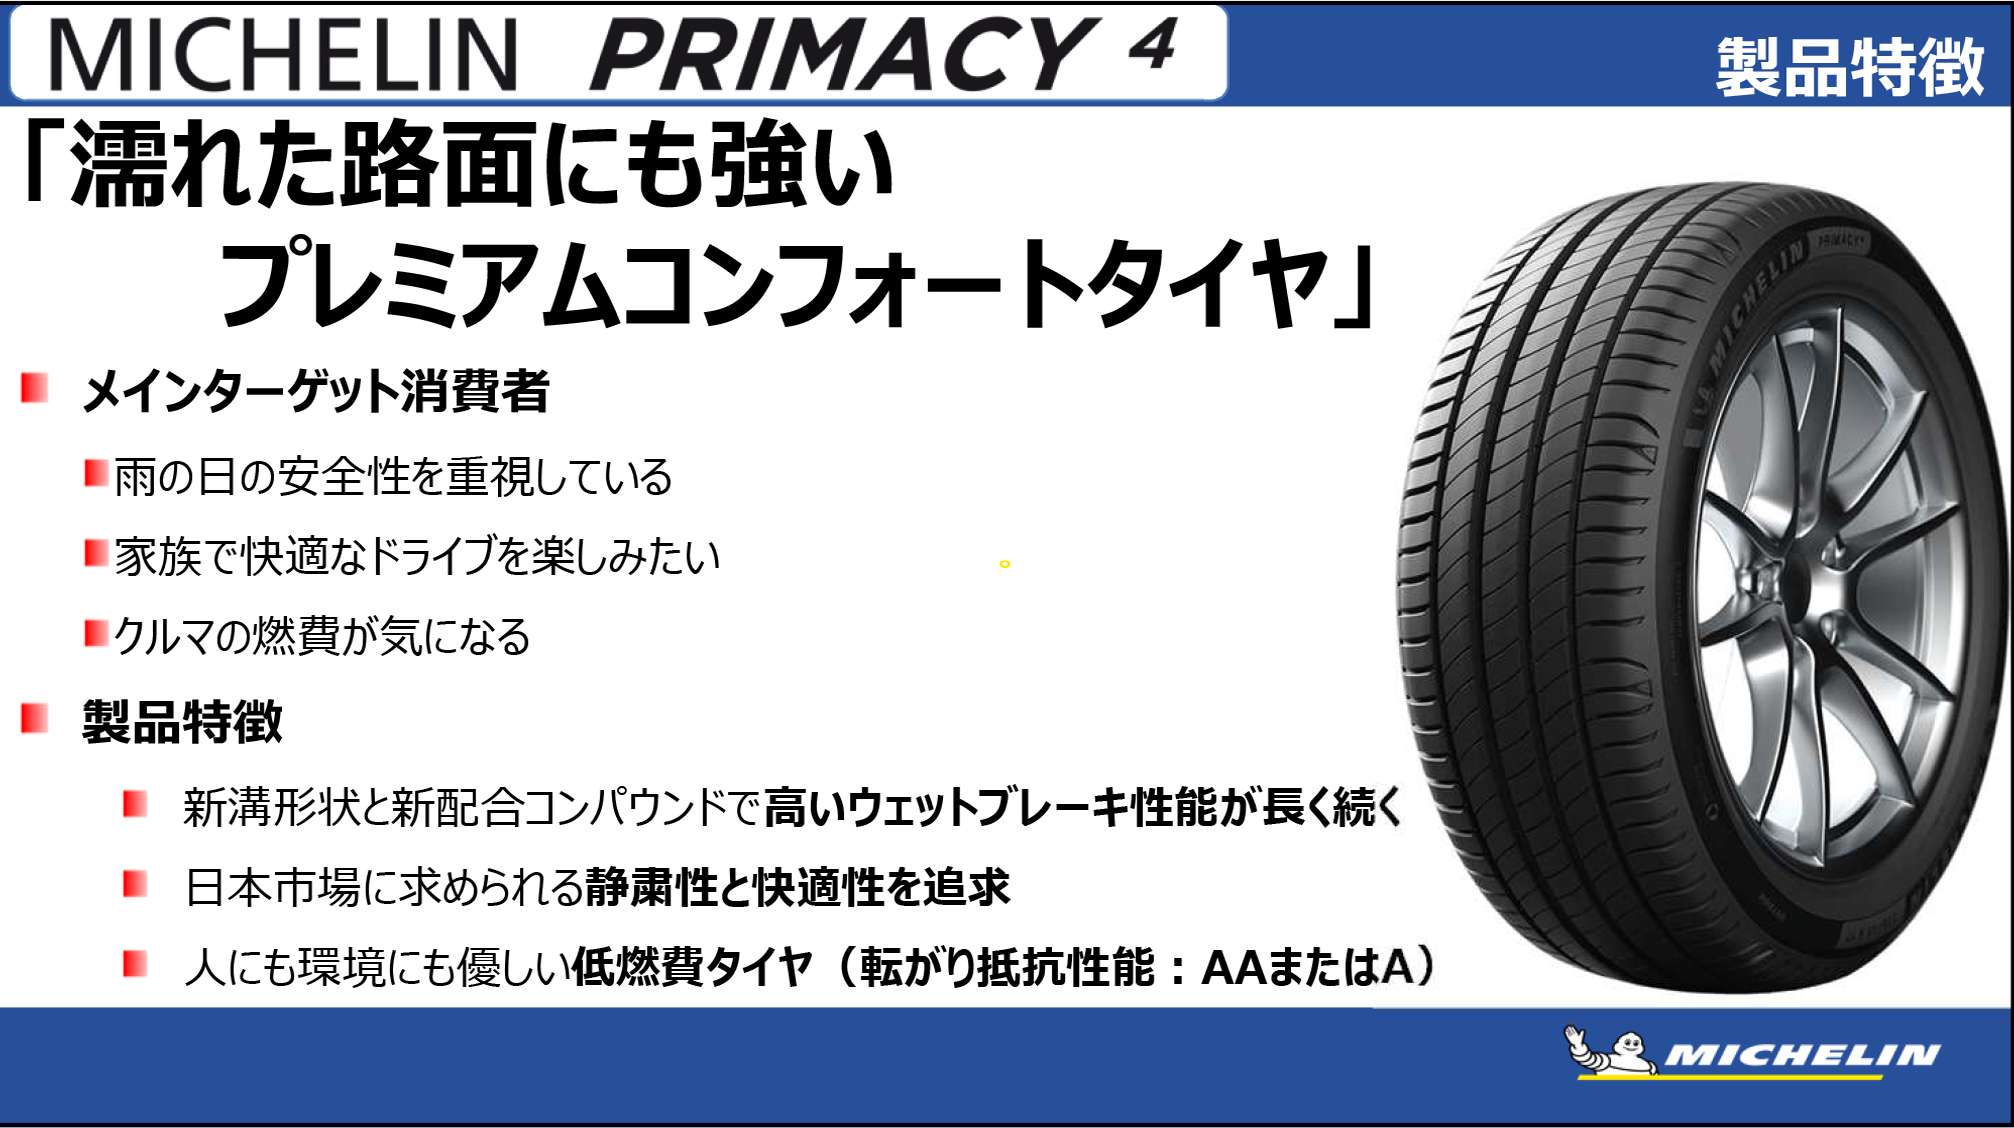 ミシュラン プライマシー4 235 55R18 18インチ XL コンフォート MICHELIN V PRIMACY サマータイヤ 4本セット